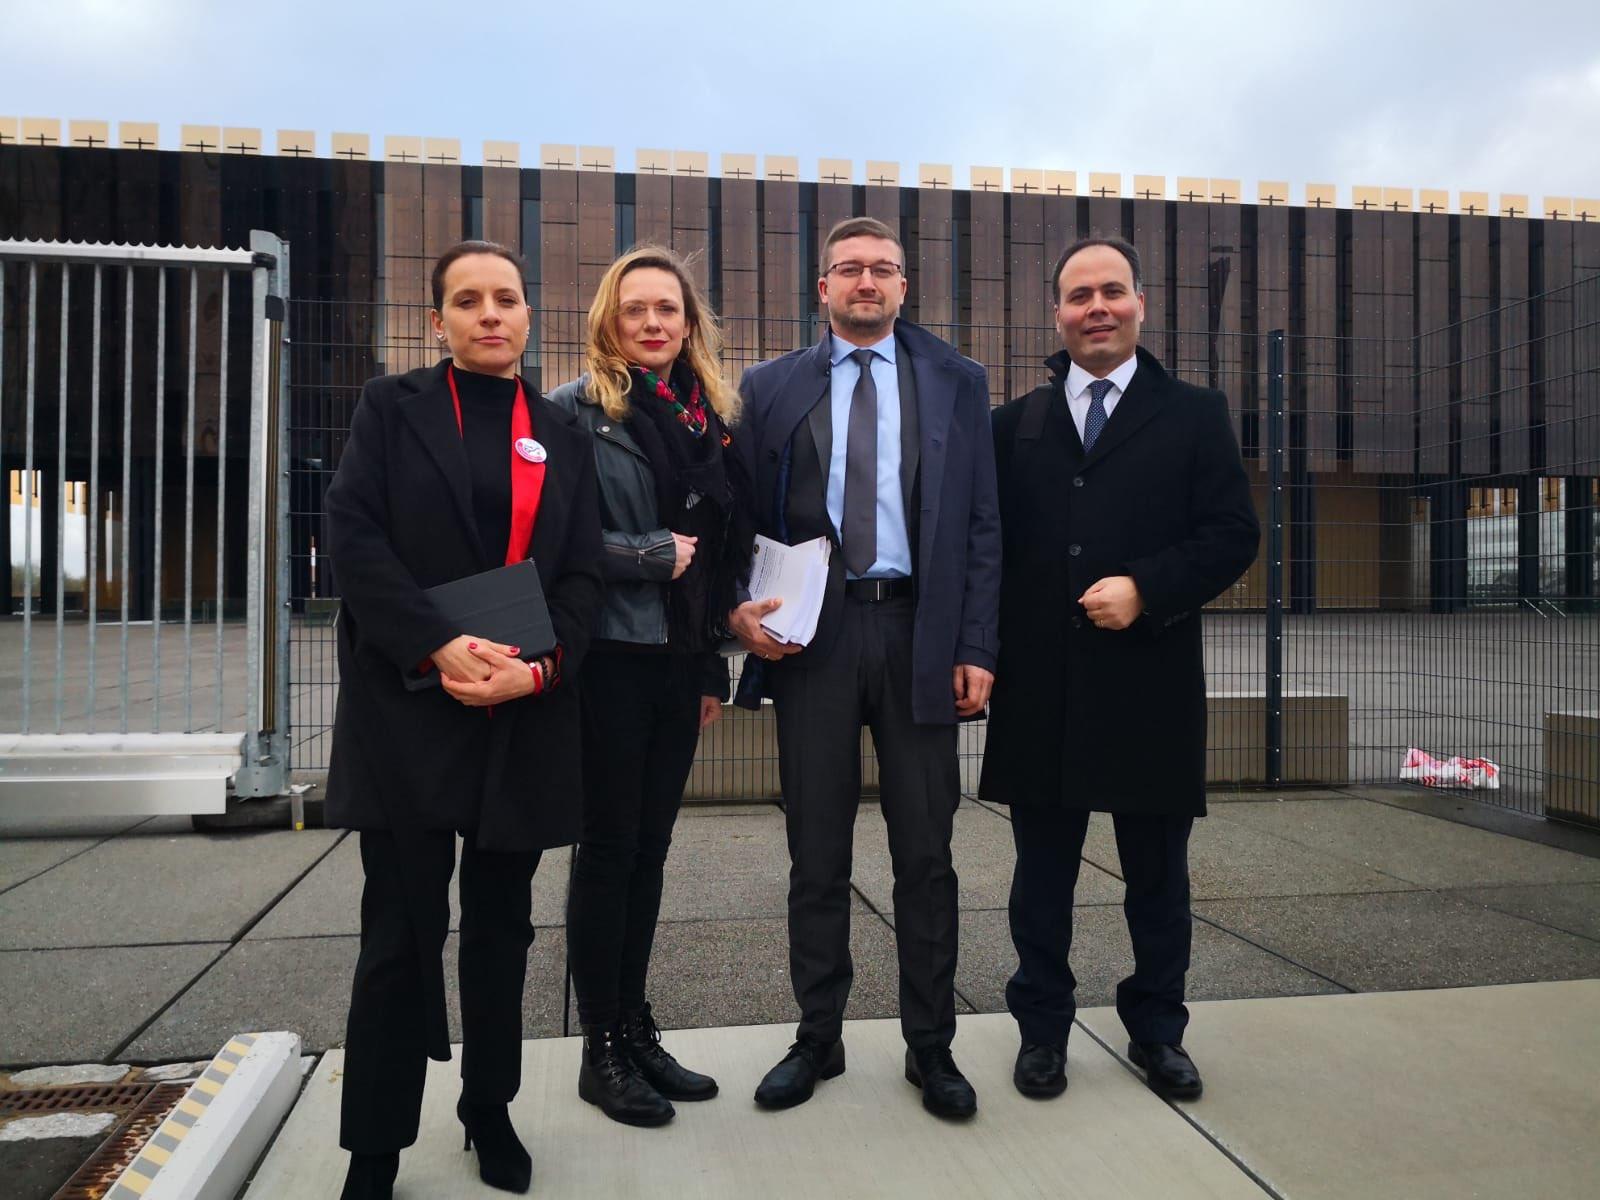 Sędziowie z Polski i Turcji przed TSUE / fot. Yavuz Aydin